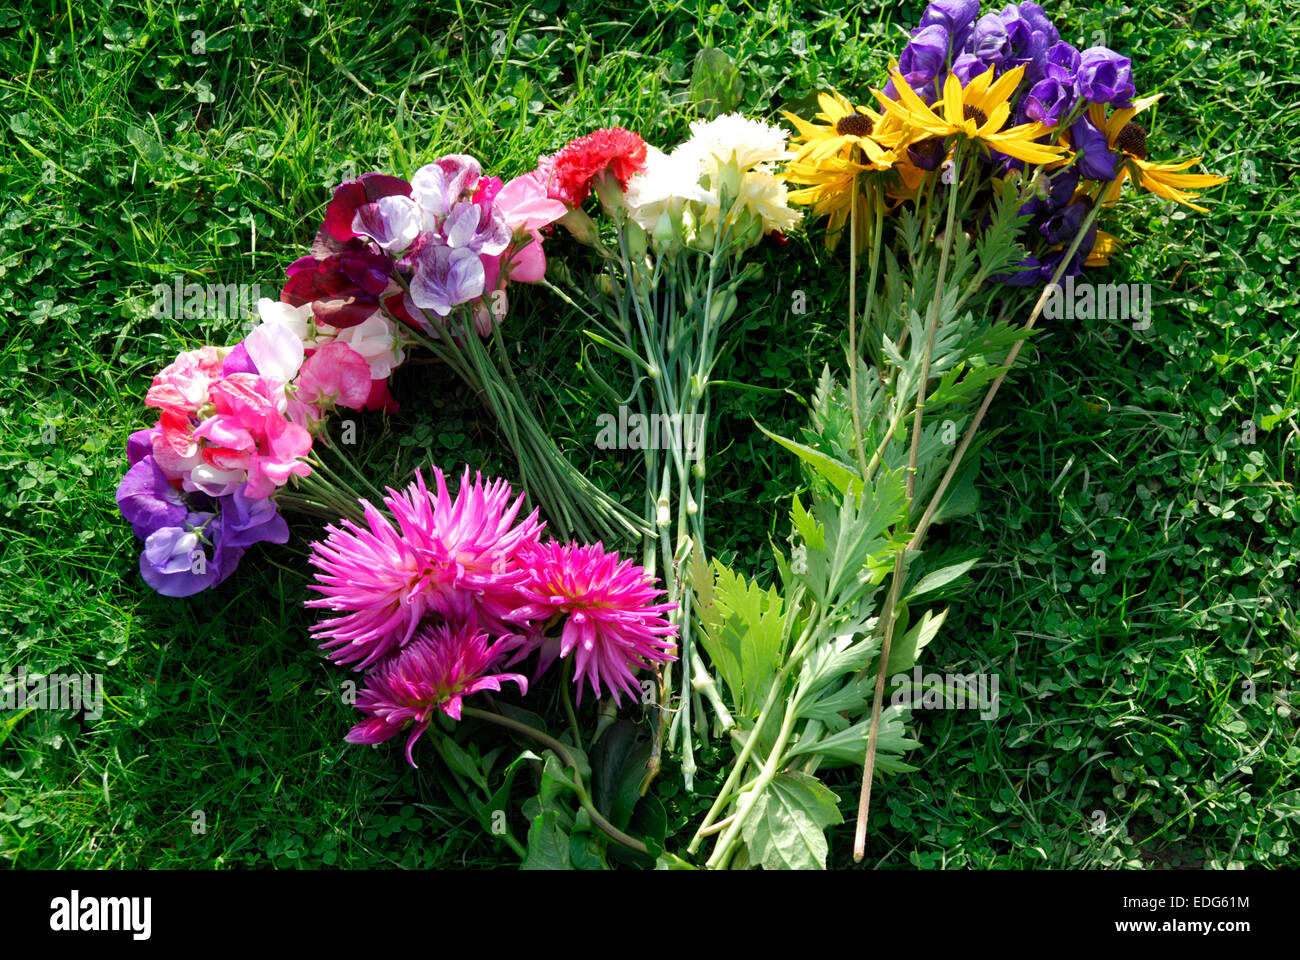 Bündel von Blumen auf grünem Rasen Hintergrund, Dalias Zuckererbsen Sonnenhut enthält Stockfoto